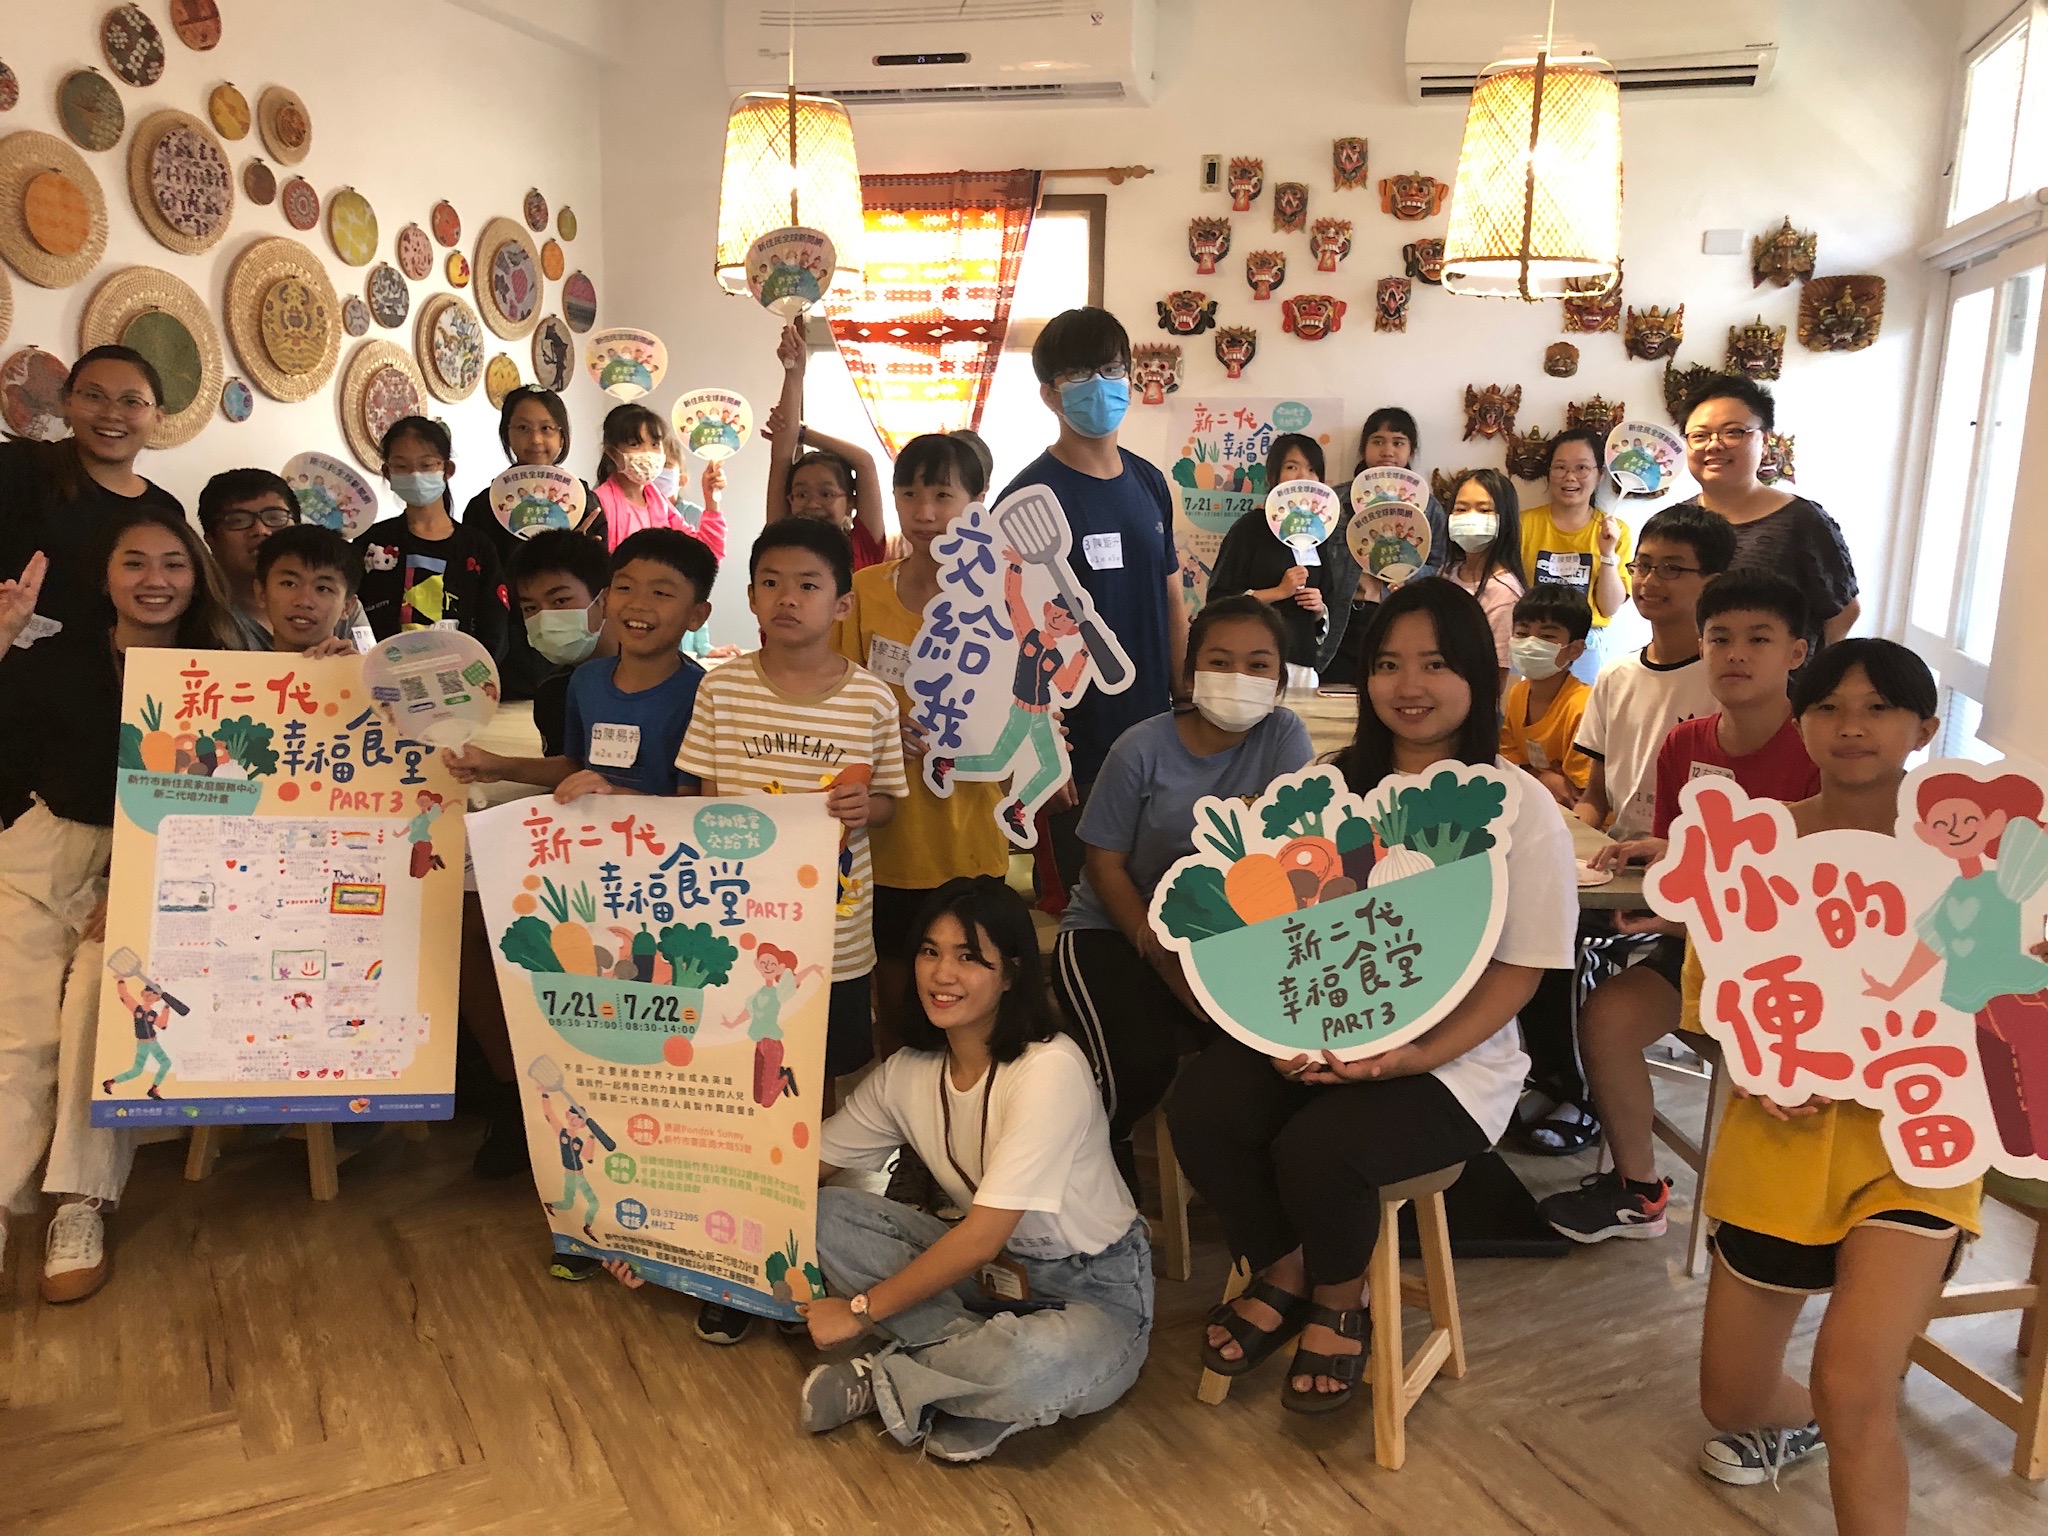 臺灣愛爾德社會福利協會以「新二代幸福食堂」培力新二代學童。